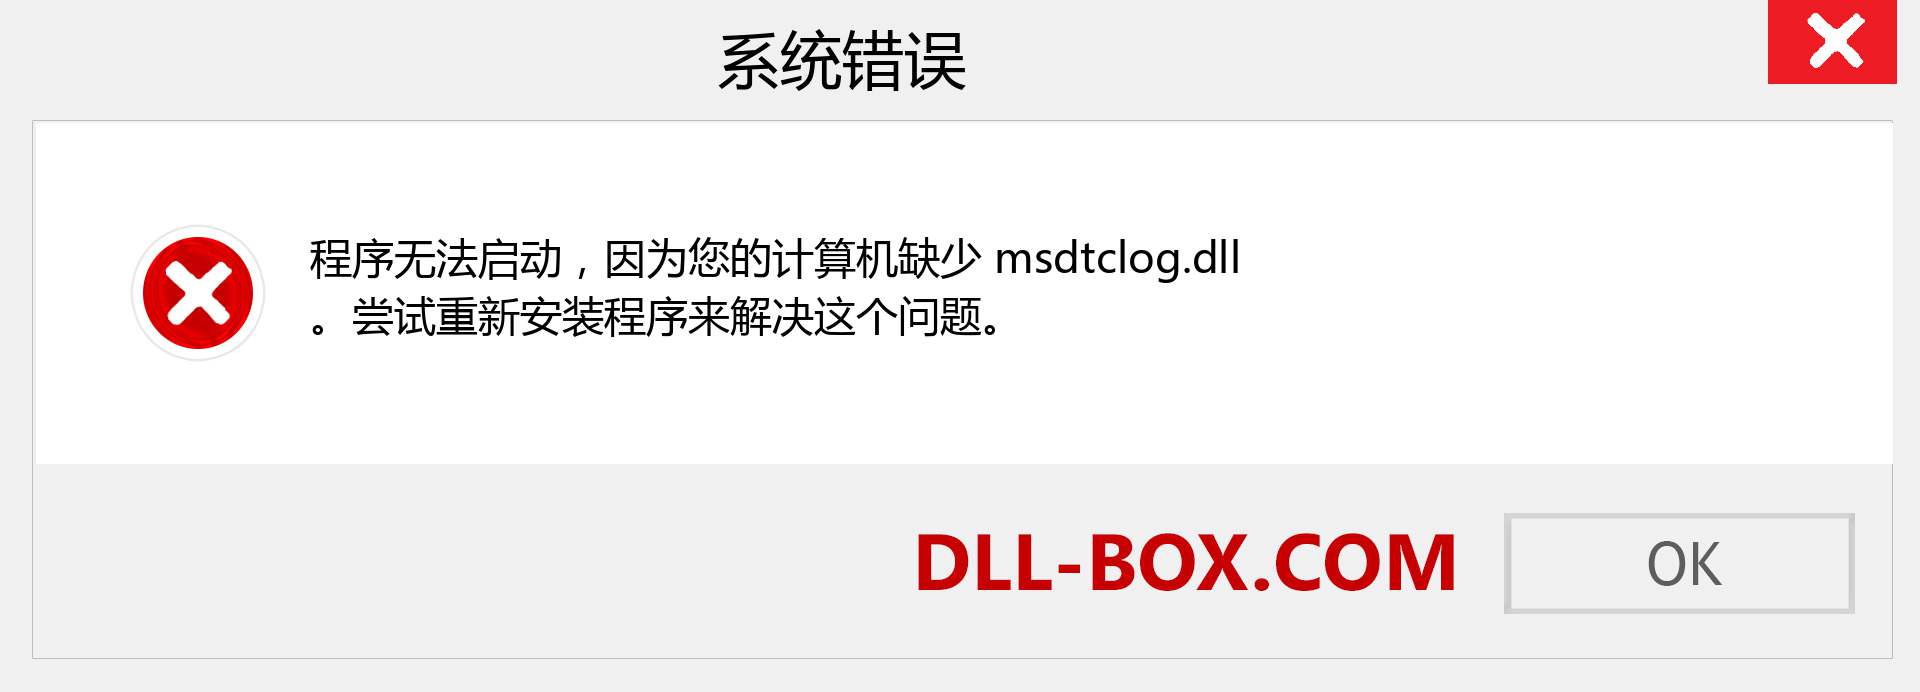 msdtclog.dll 文件丢失？。 适用于 Windows 7、8、10 的下载 - 修复 Windows、照片、图像上的 msdtclog dll 丢失错误